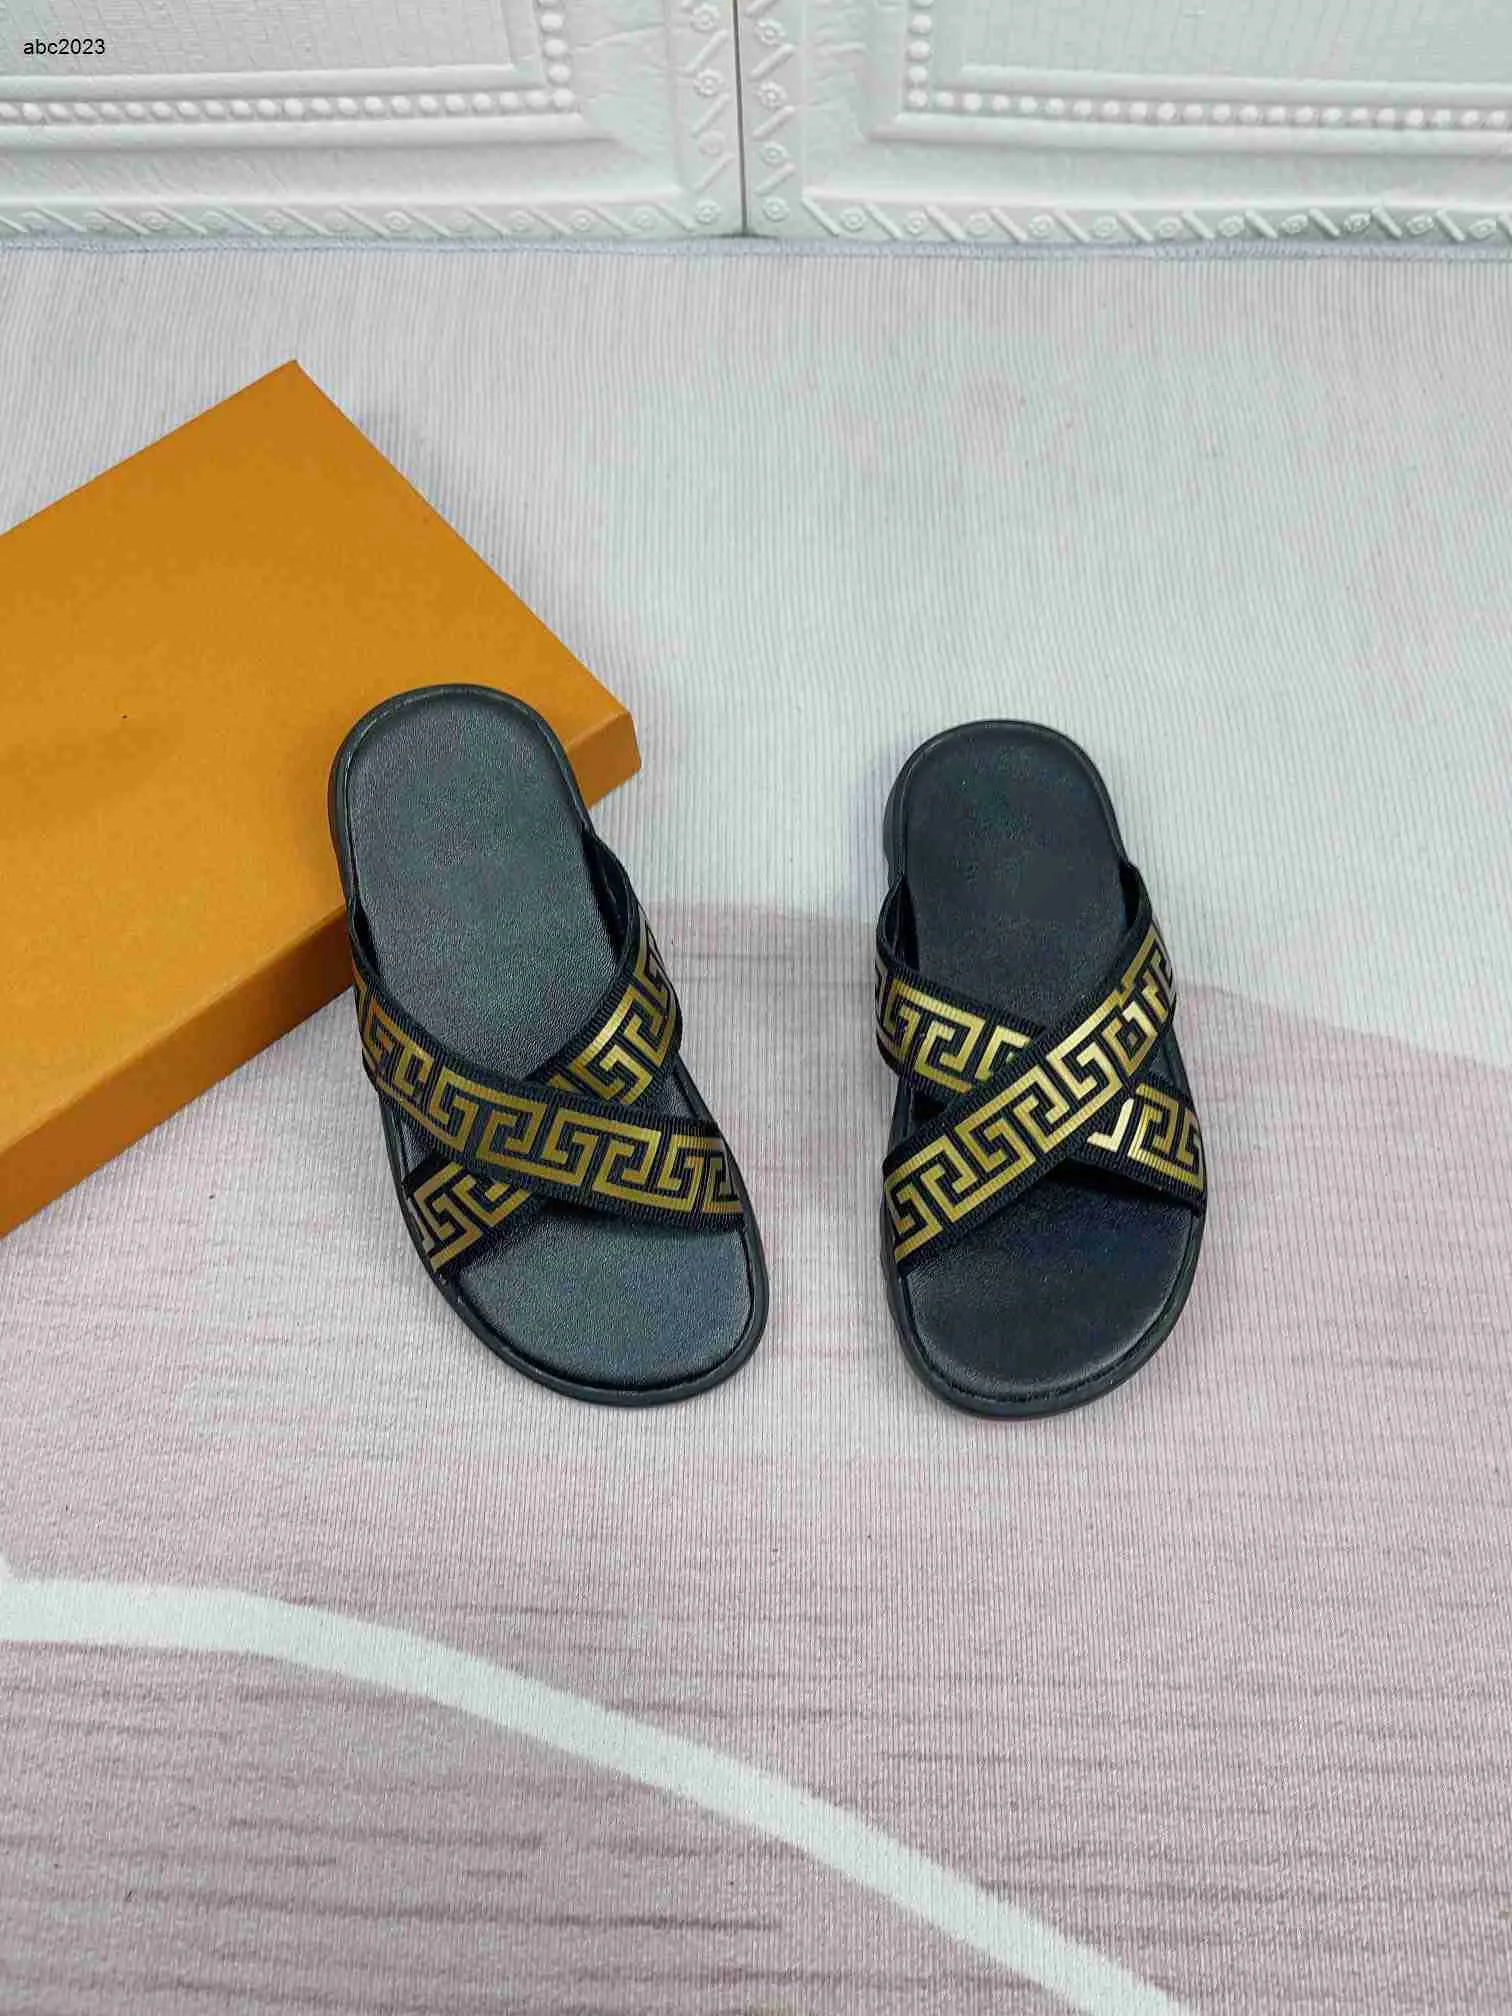 新しいデザイナースライドキッズサンダル文字印刷クロス織りテープベビースリッパサイズ26-35夏の子供靴ボックスパッケージ6月21日